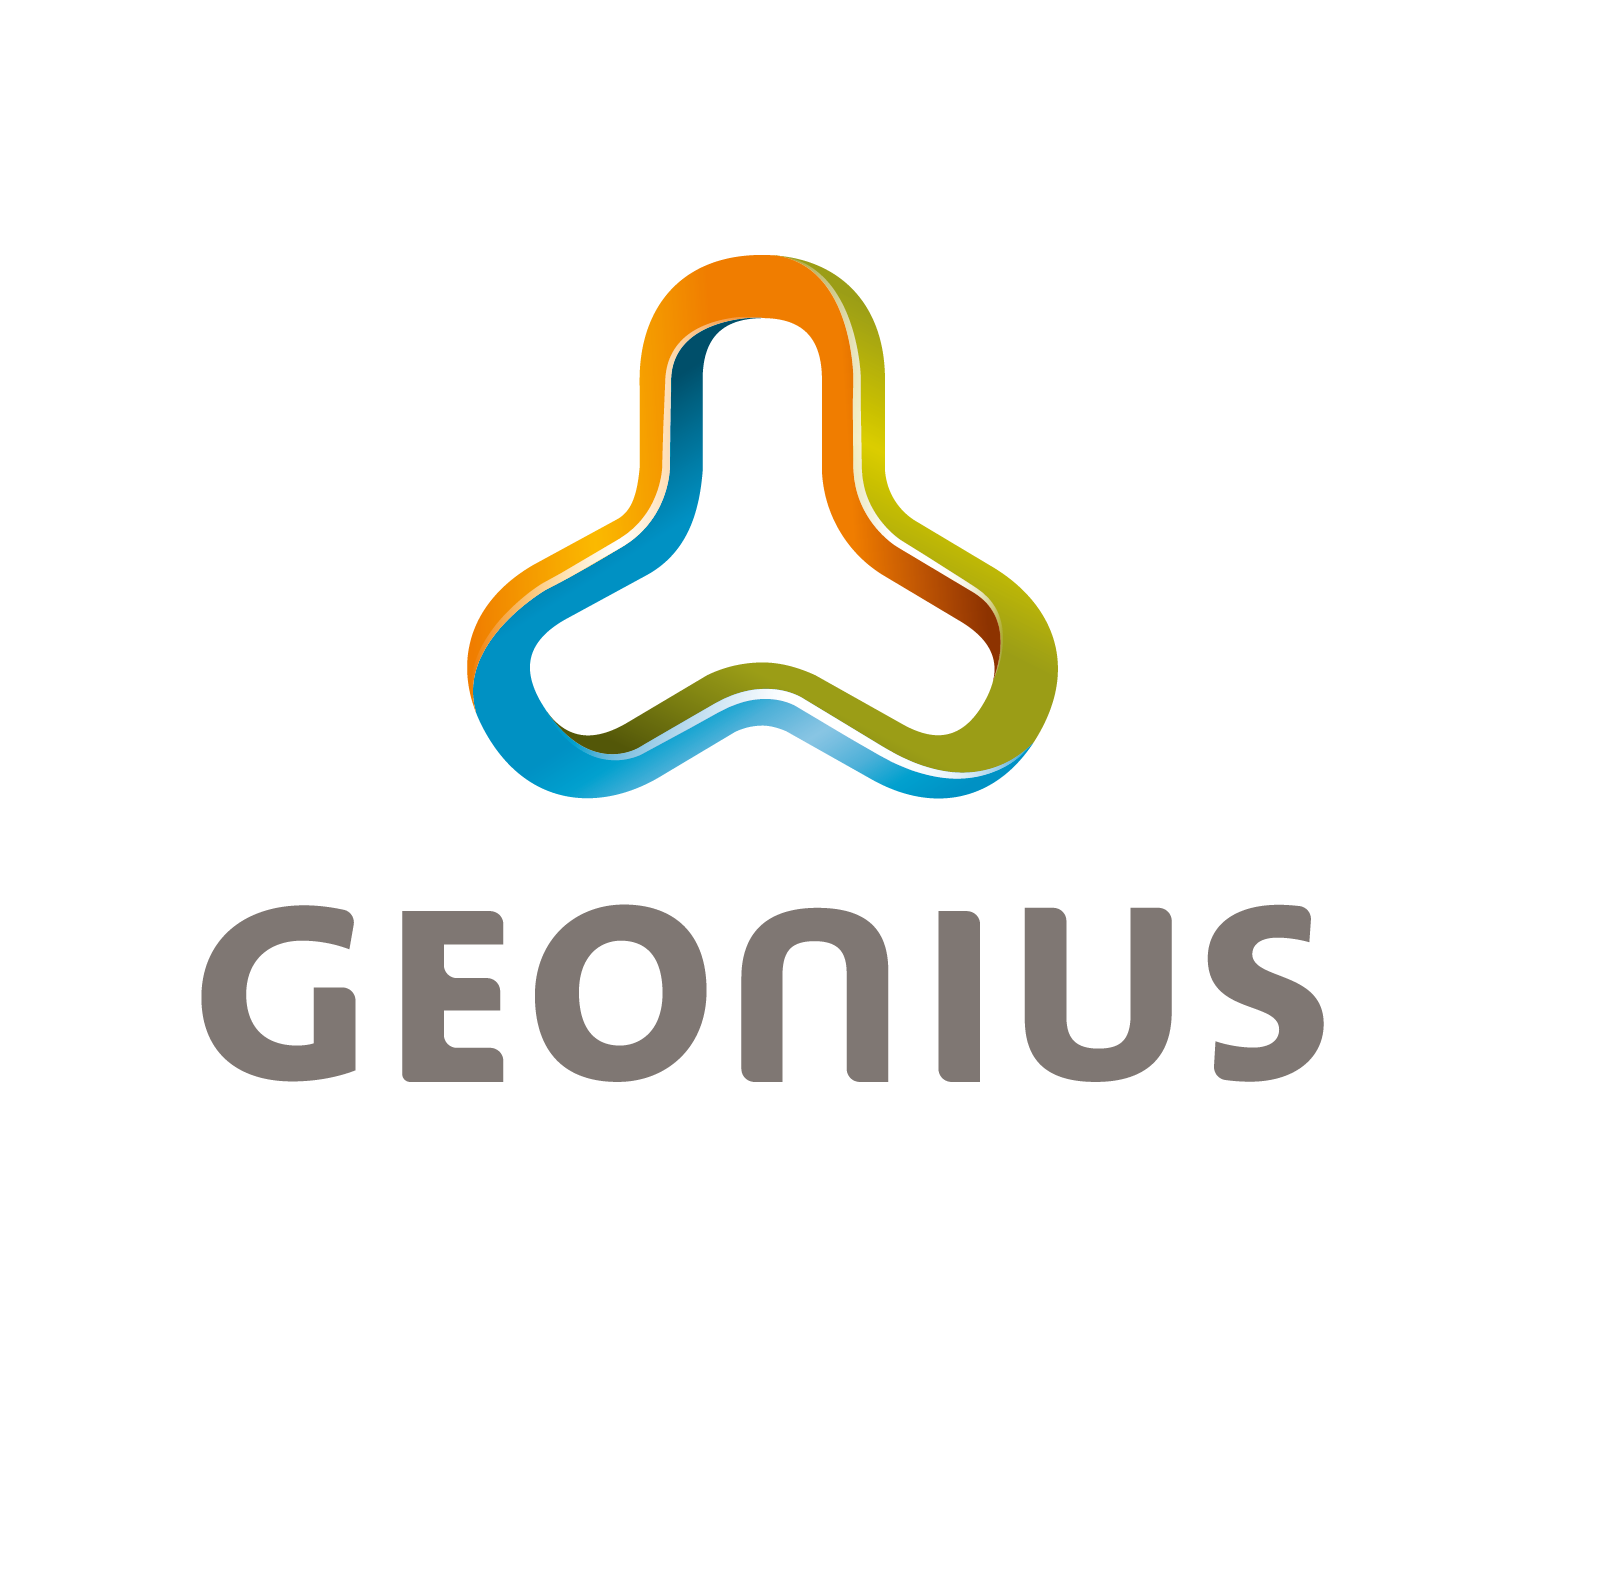 Geonius